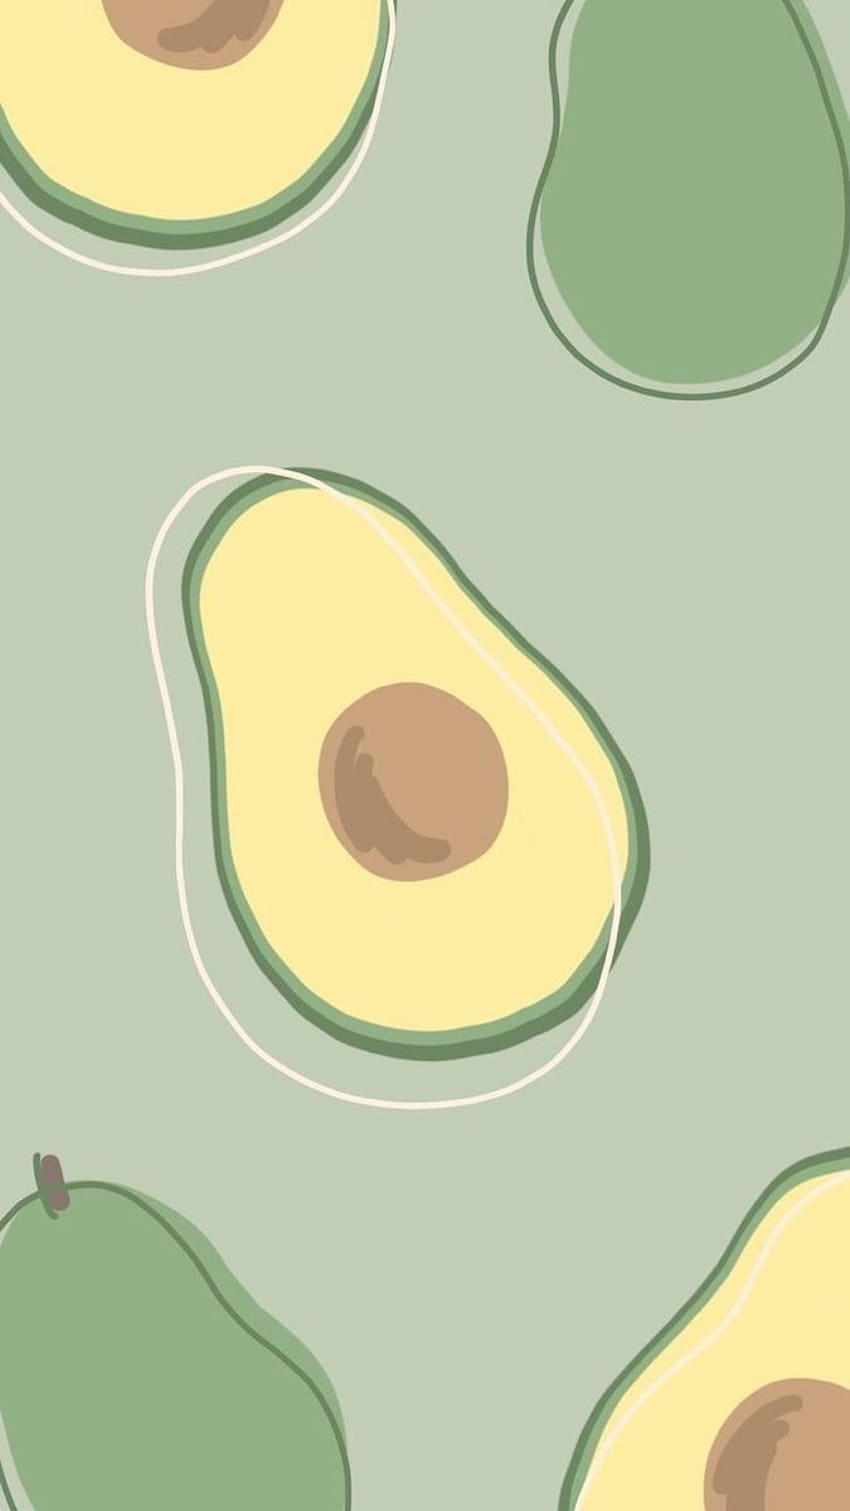 Đừng bỏ qua bộ sưu tập ảnh độc đáo về avocado phone background. Chỉ với một màu xanh lá cây nhẹ nhàng và hình ảnh trái bơ mọng nước được thể hiện cực kì sinh động, bạn sẽ đắm chìm vào không gian thiên nhiên mỗi lần mở điện thoại lên.